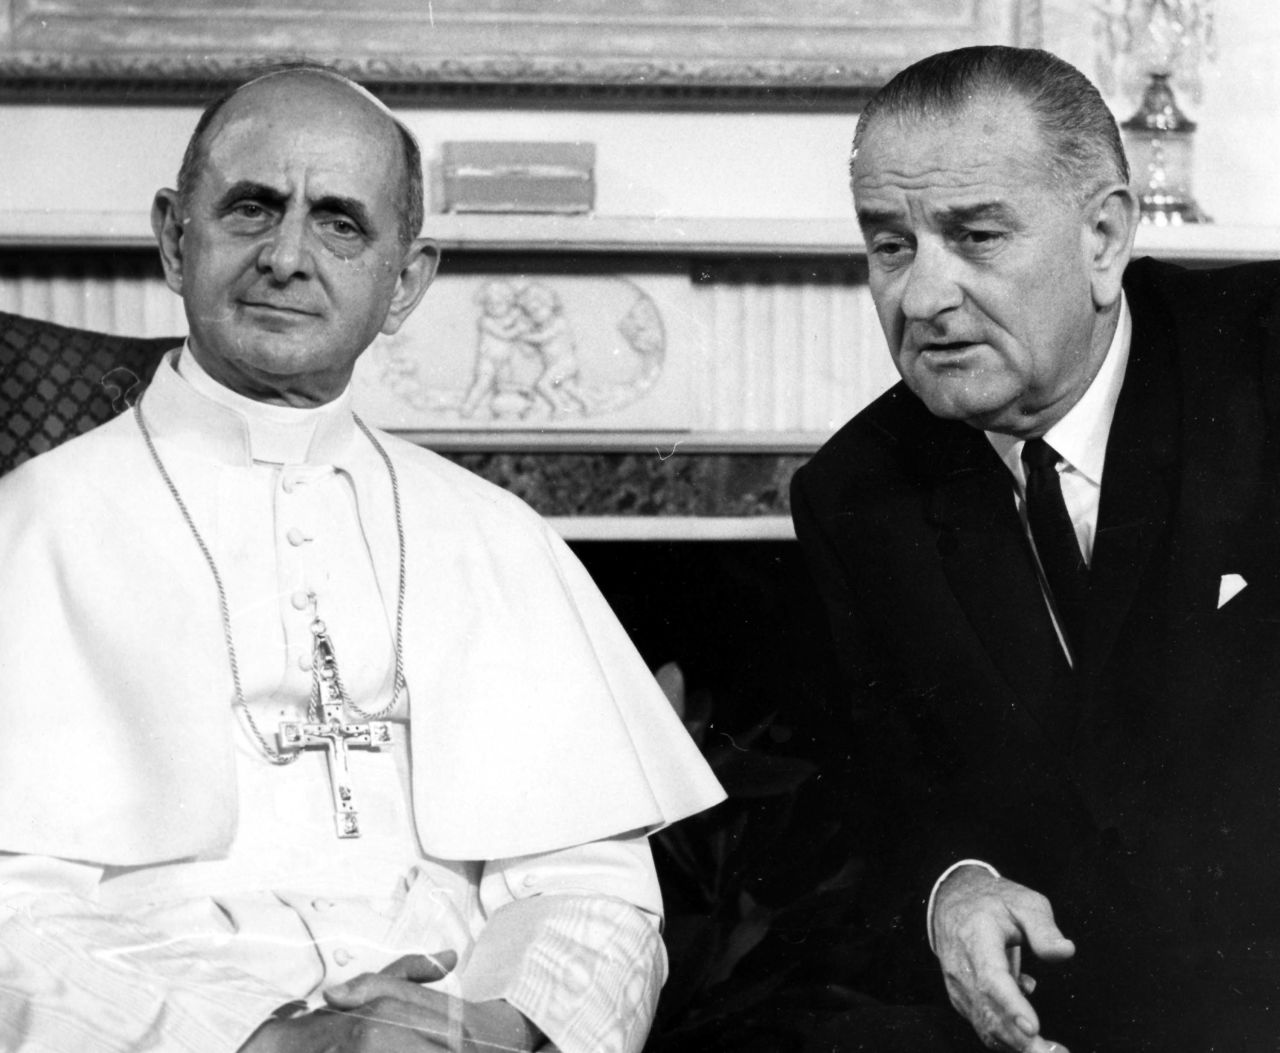 En 1965, el papa Pablo VI fue el primero en visitar Estados Unidos. Se reunió con el presidente Lyndon B. Johnson e hizo un llamado por la paz mundial en las Naciones Unidas.